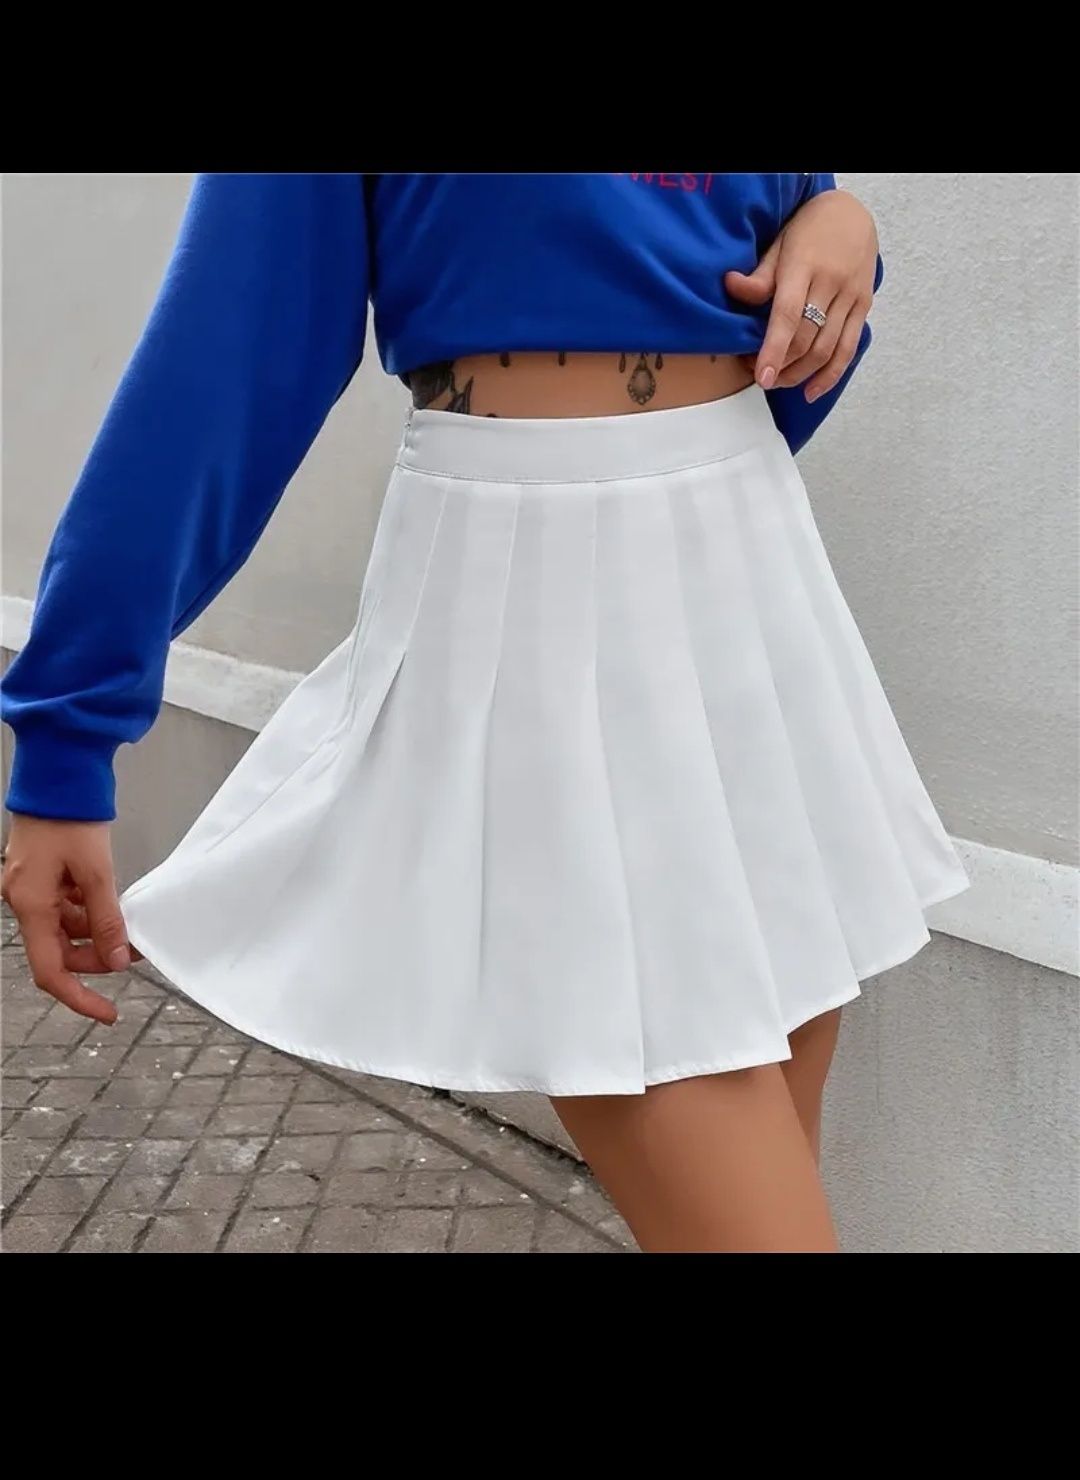 Пола/панталон - бяла/s. Уникална пола за лятото - плисирана